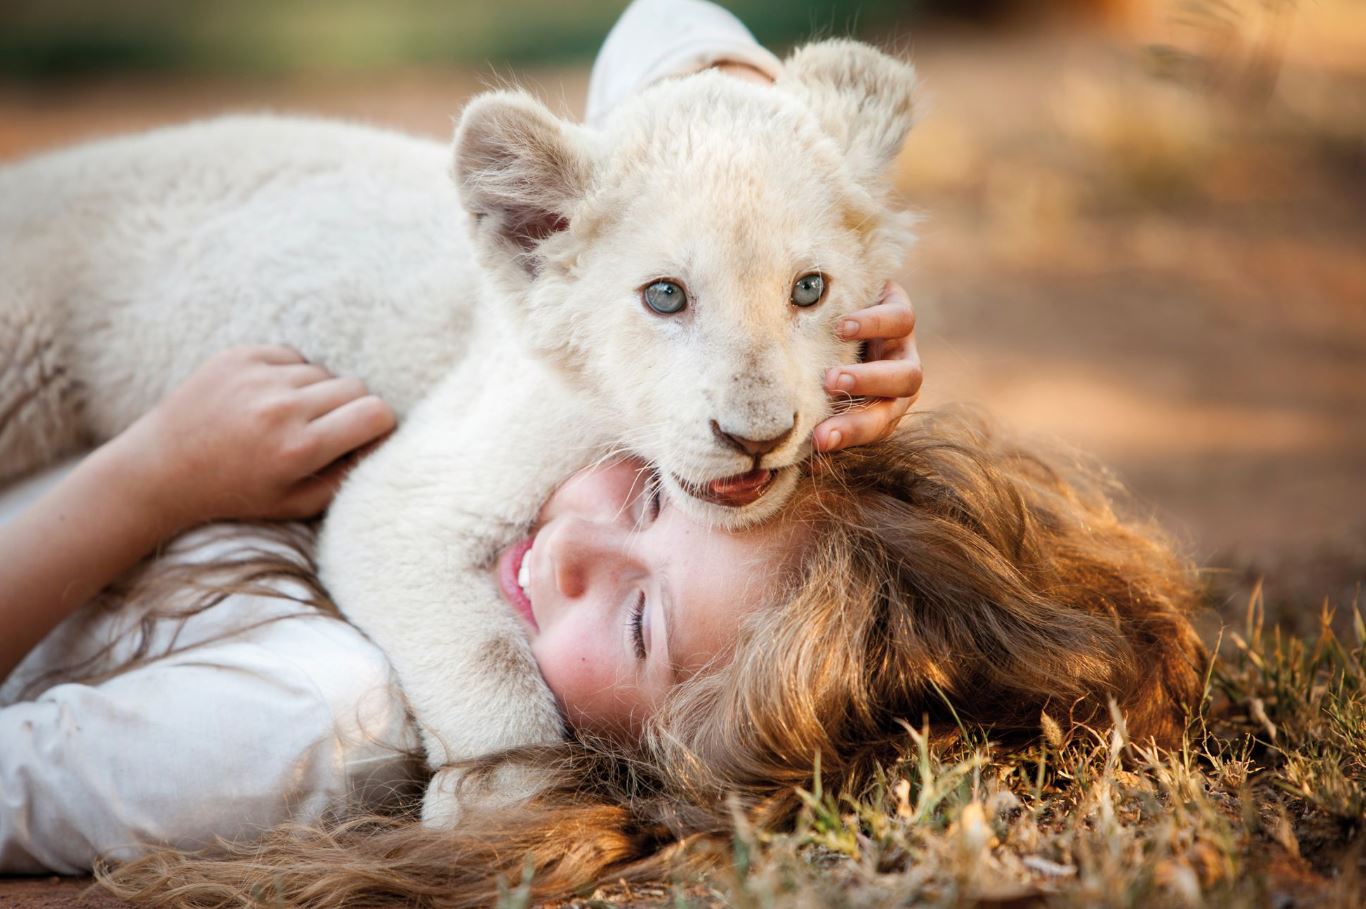 Cine con niños: Mia y el leon blanco